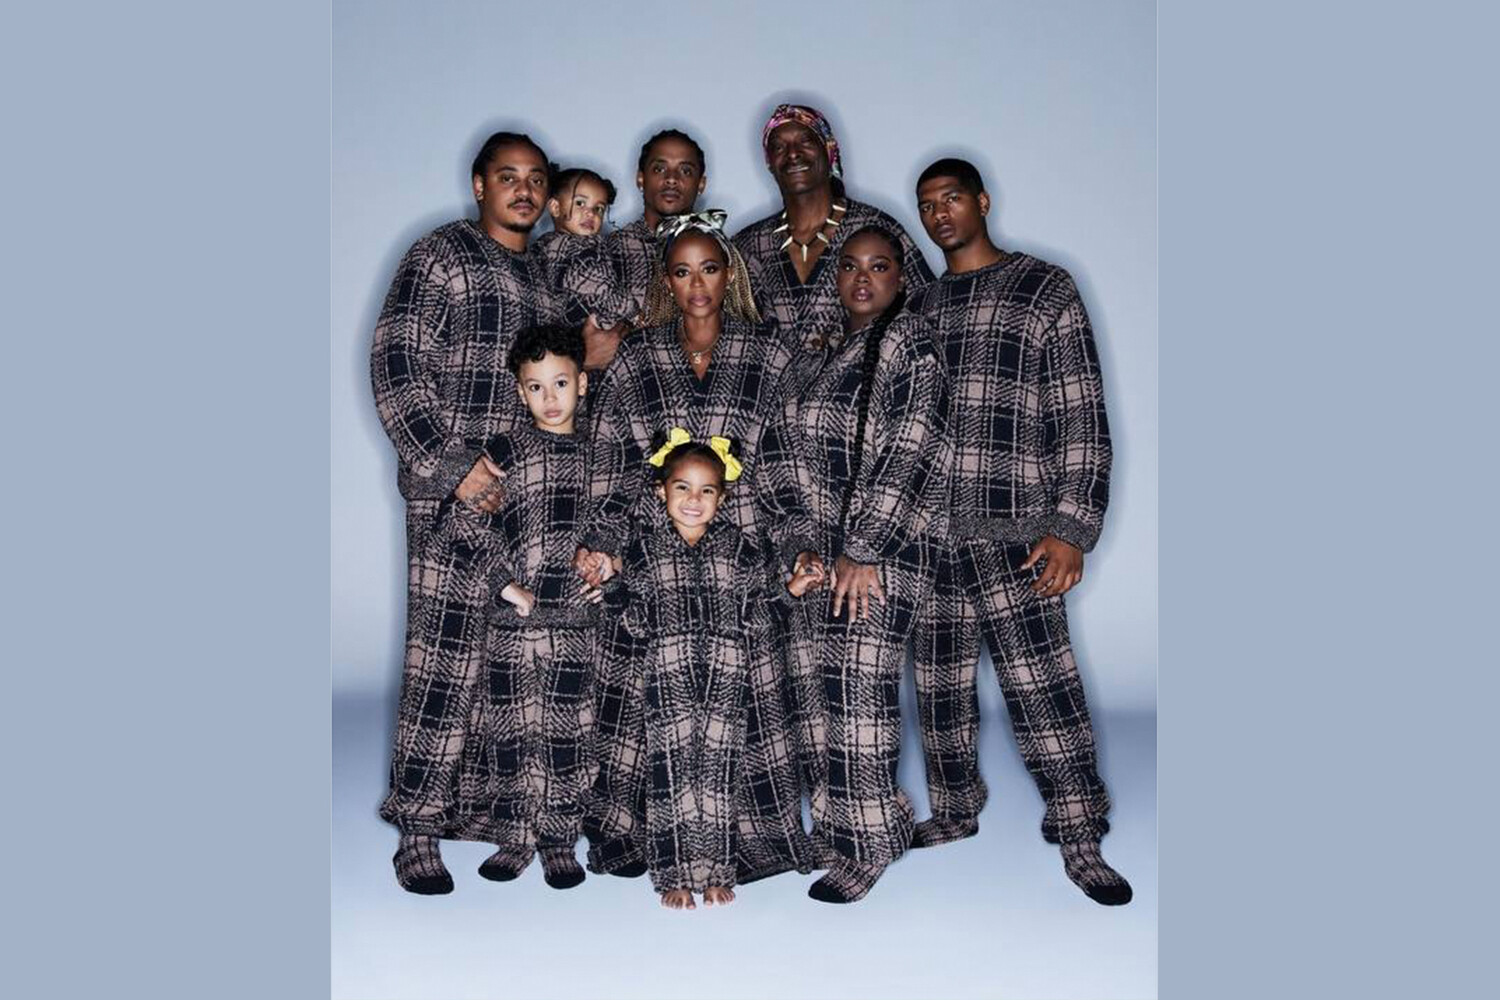 Снуп Дог вместе со всей своей семьей стал героем рекламной кампании новой коллекции бренда Ким Кардашьян